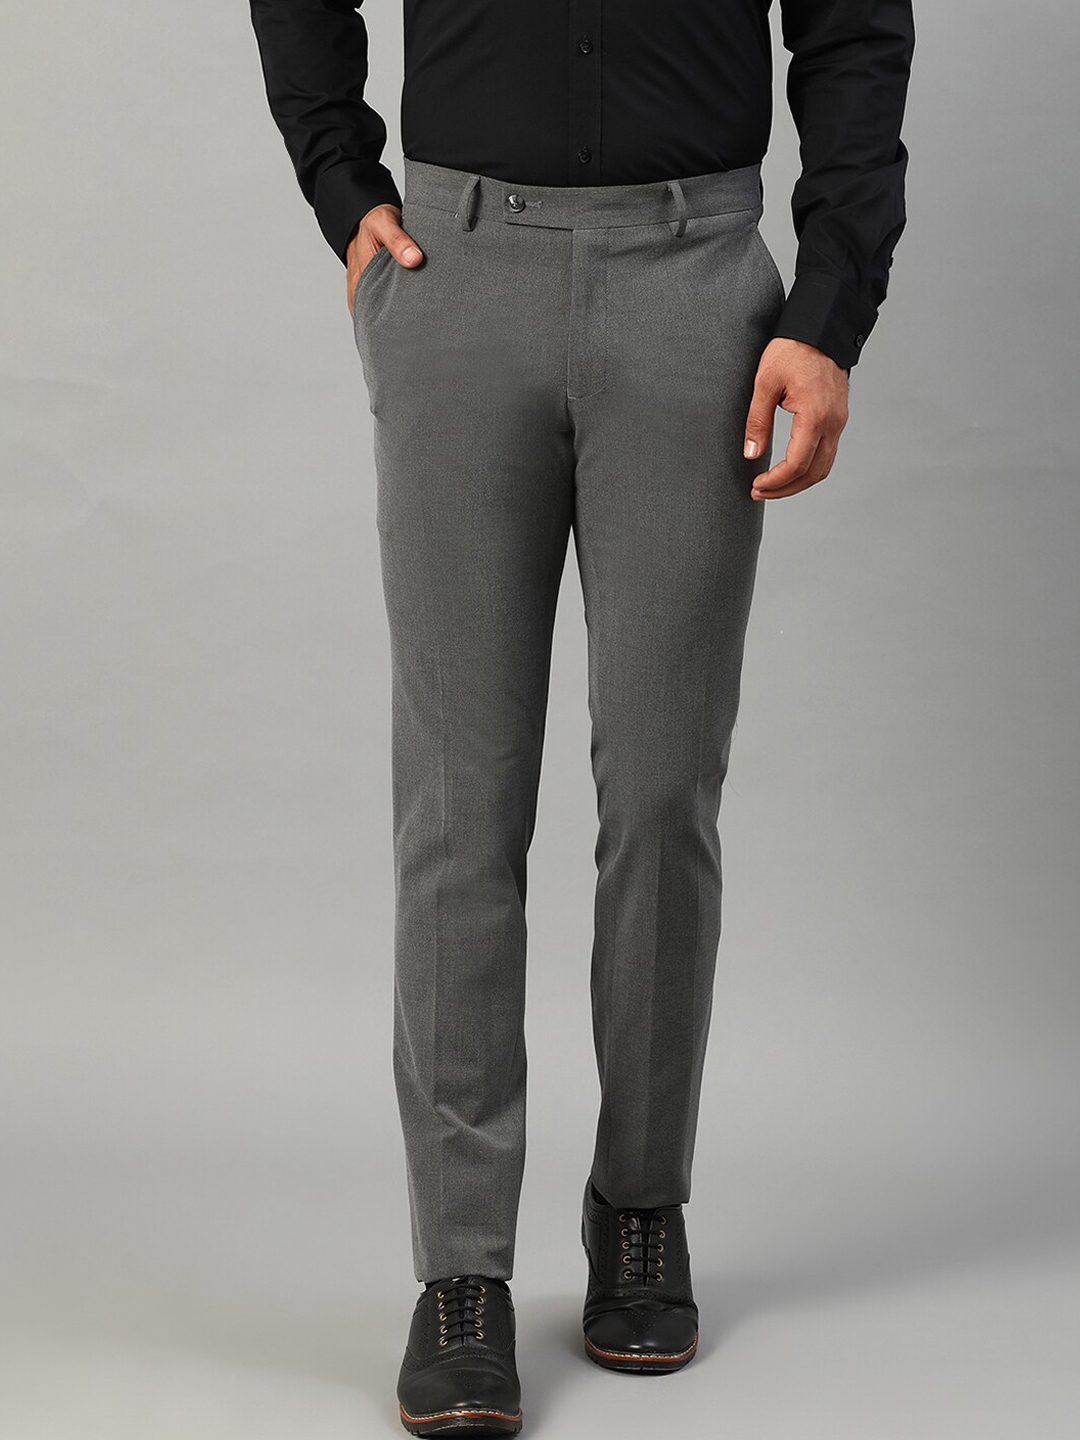 Buy HARSAM Men Grey Slim Fit Formal Trousers - Trousers for Men ...